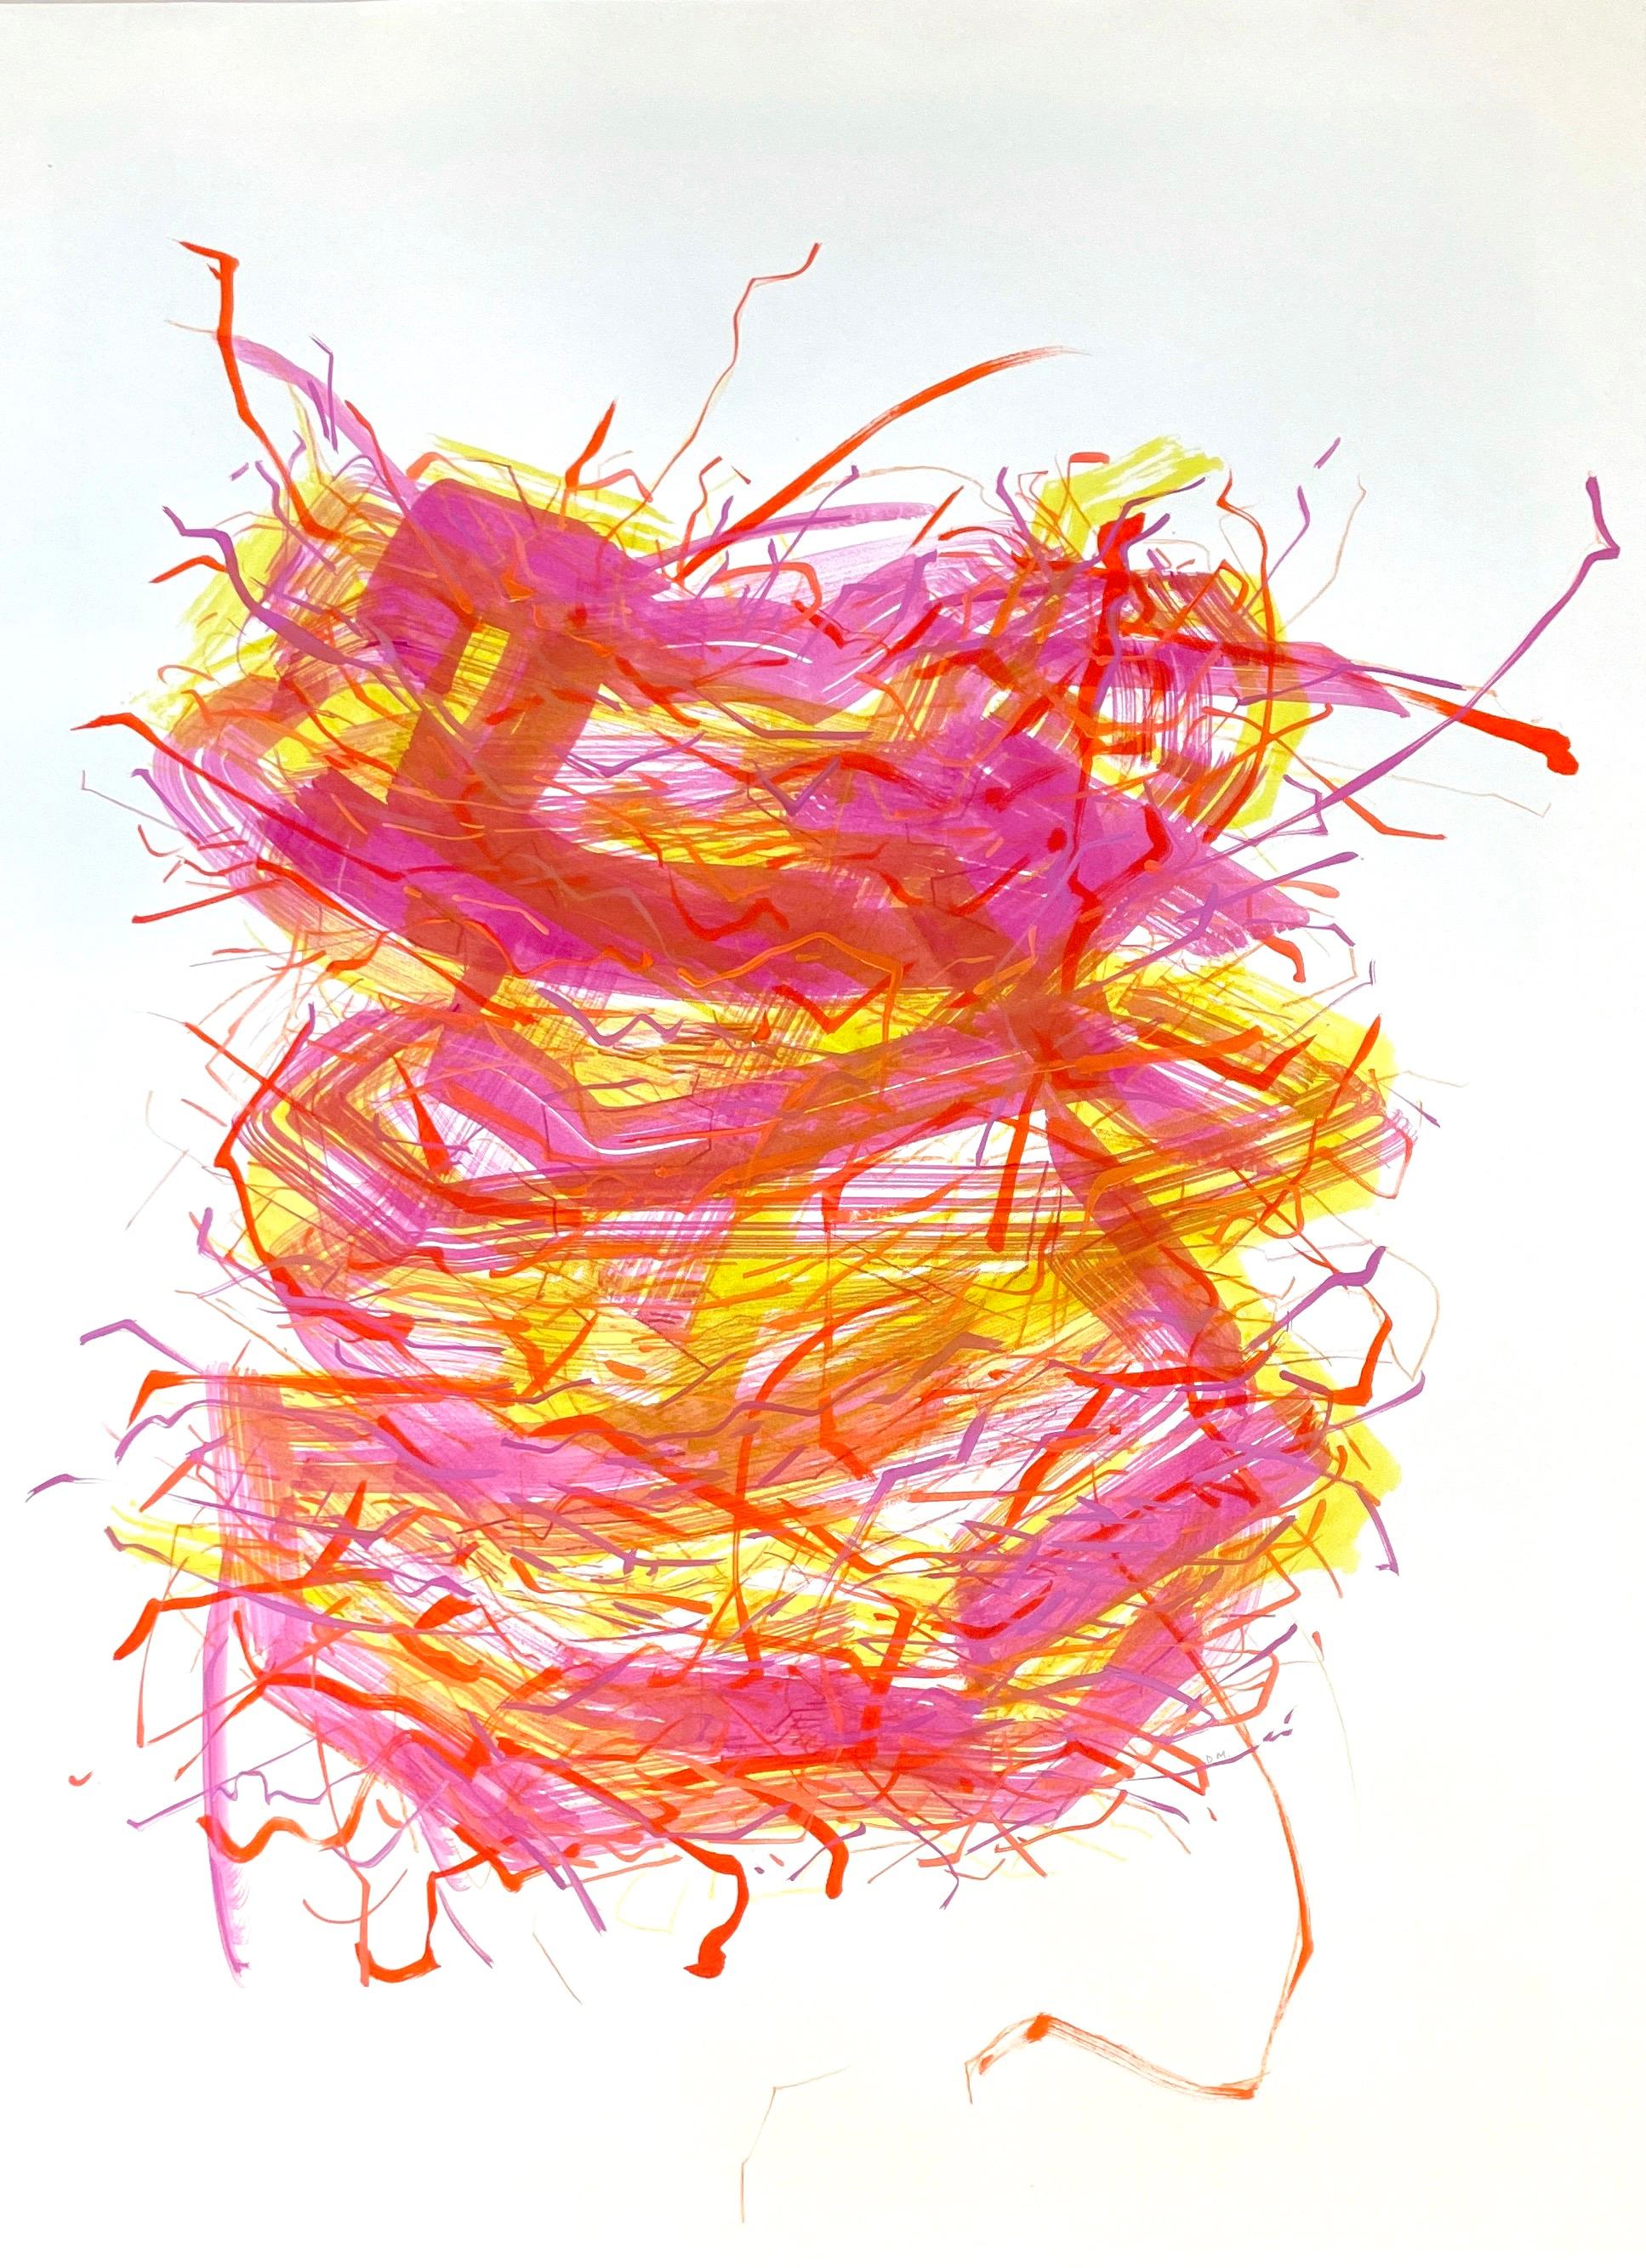 Nest Tower II: Originalgemälde auf Papier mit abstraktem Vogel nest in Orange und Rosa